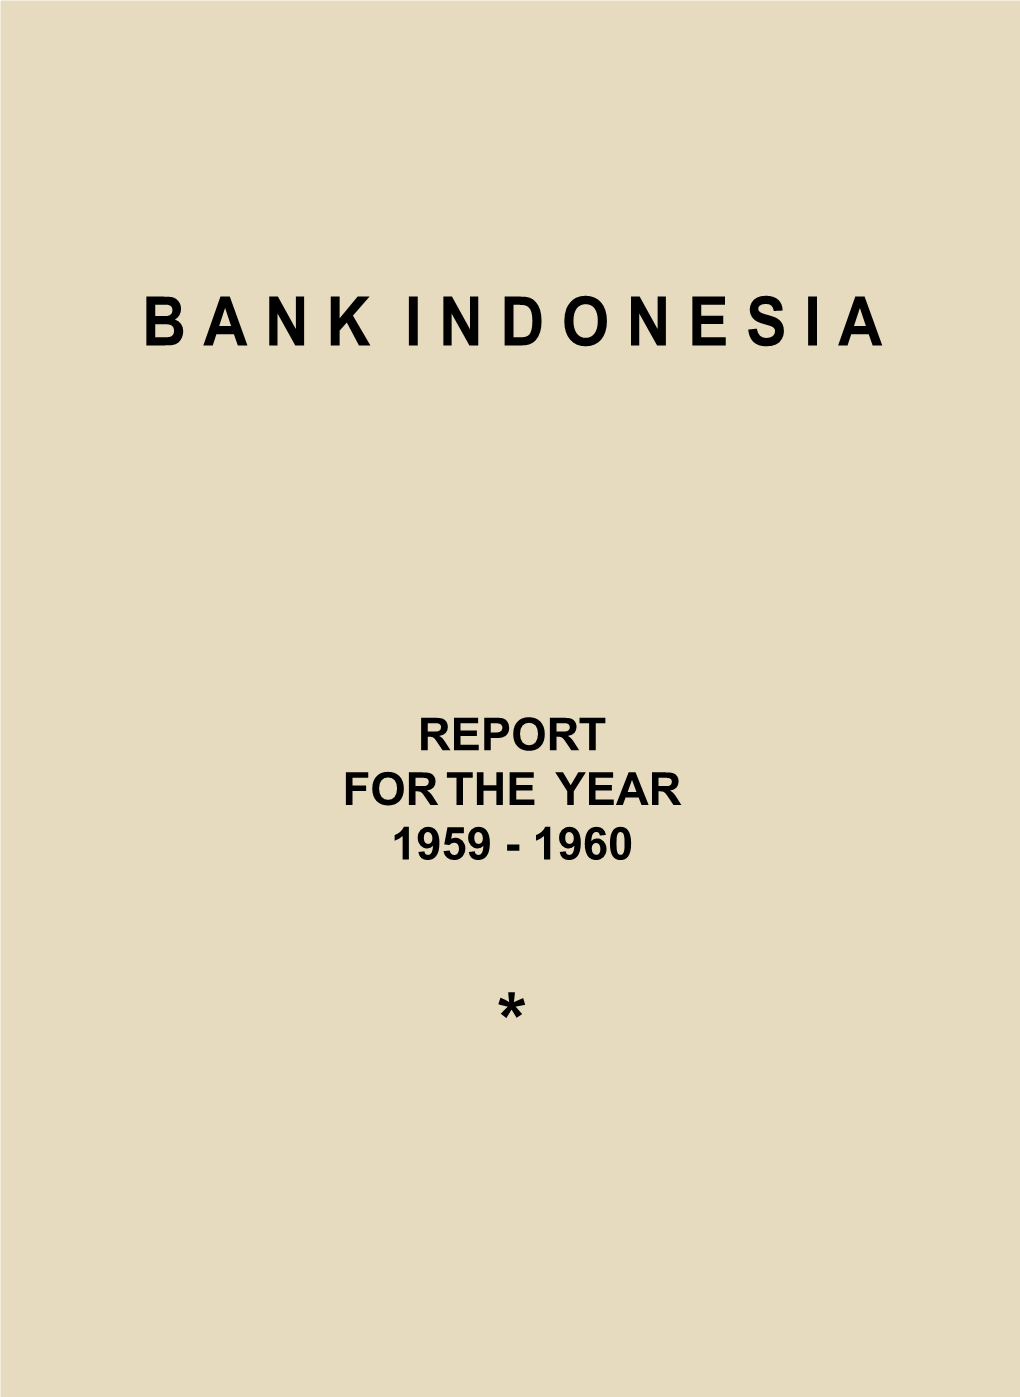 Bank Indonesia for the Financial Year 1959 - 1960 B a N K I N D O N E S I A